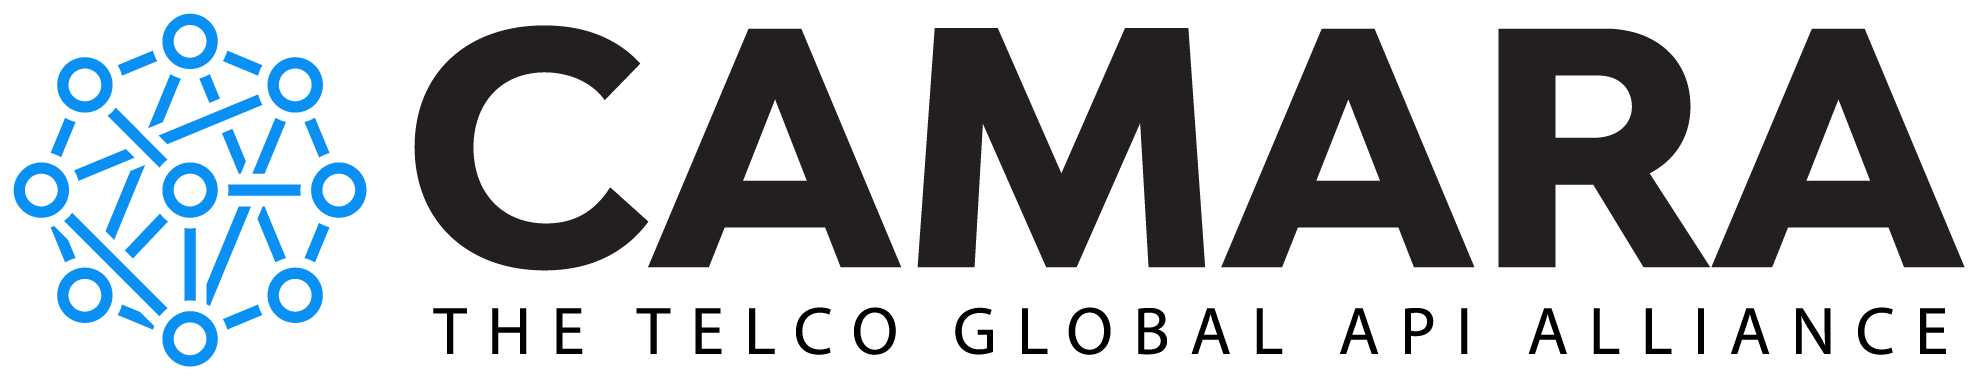 CAMARA logo and name